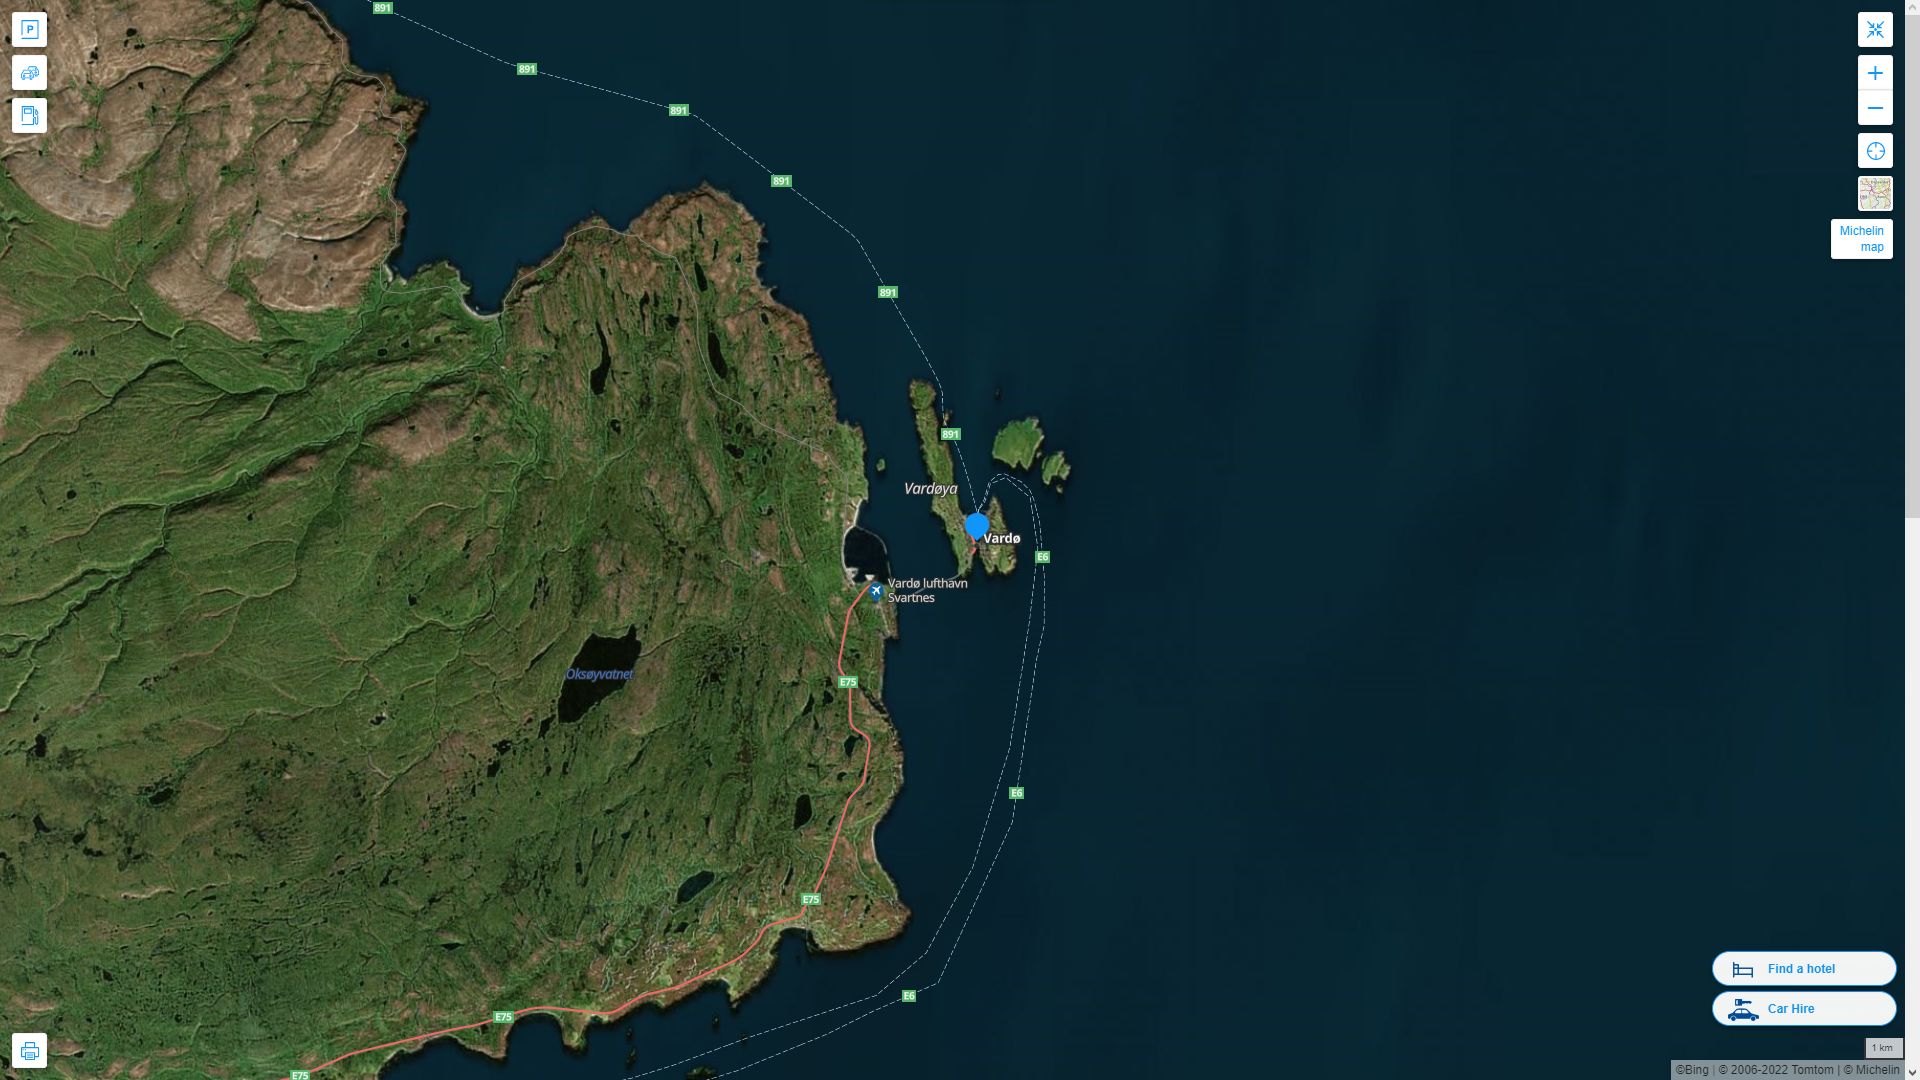 Vardo Norvege Autoroute et carte routiere avec vue satellite